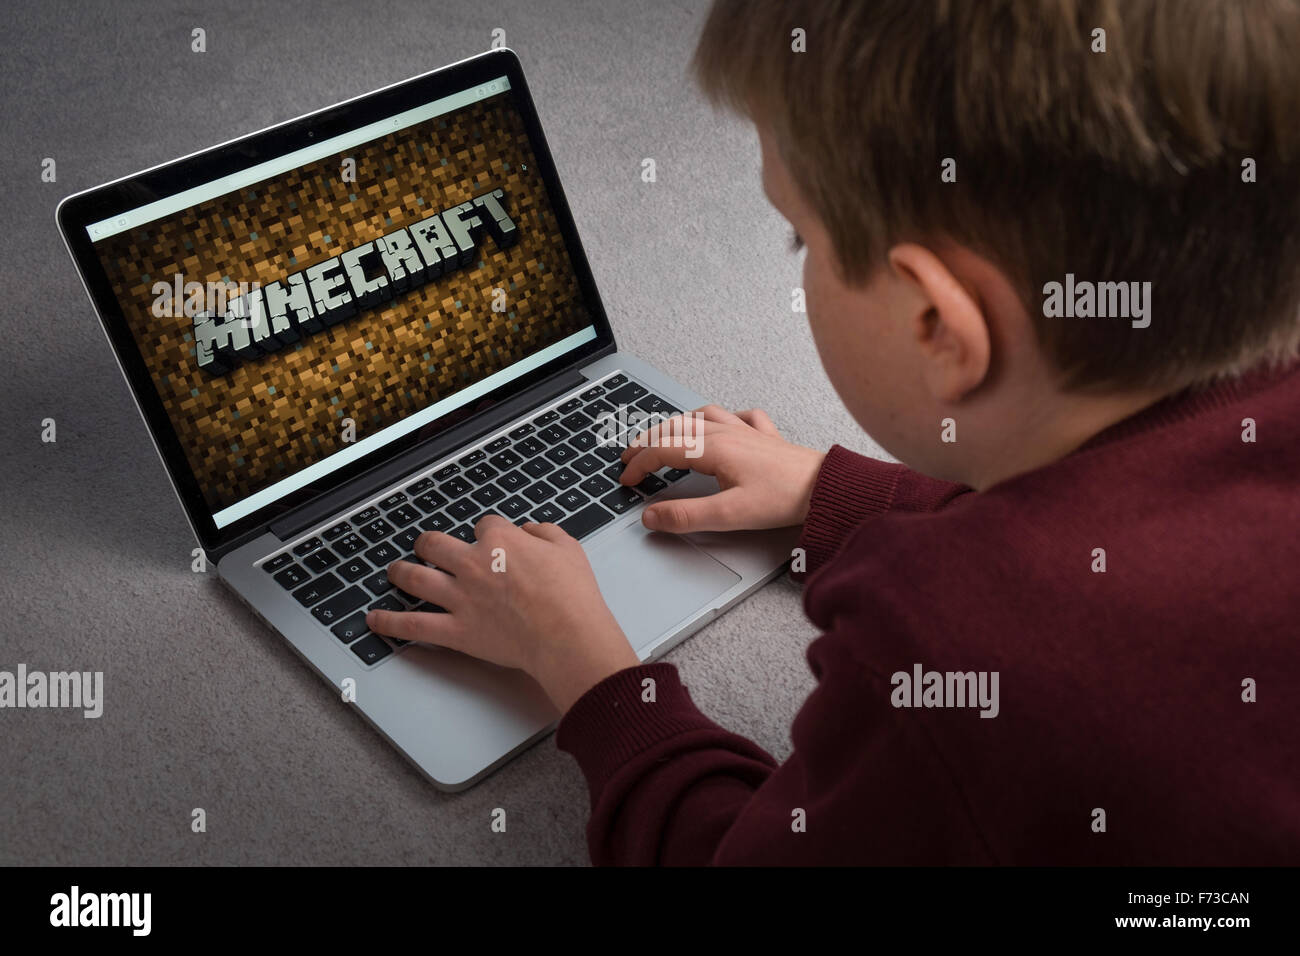 Un niño que está jugando el juego de ordenador Minecraft en un portátil. Foto de stock